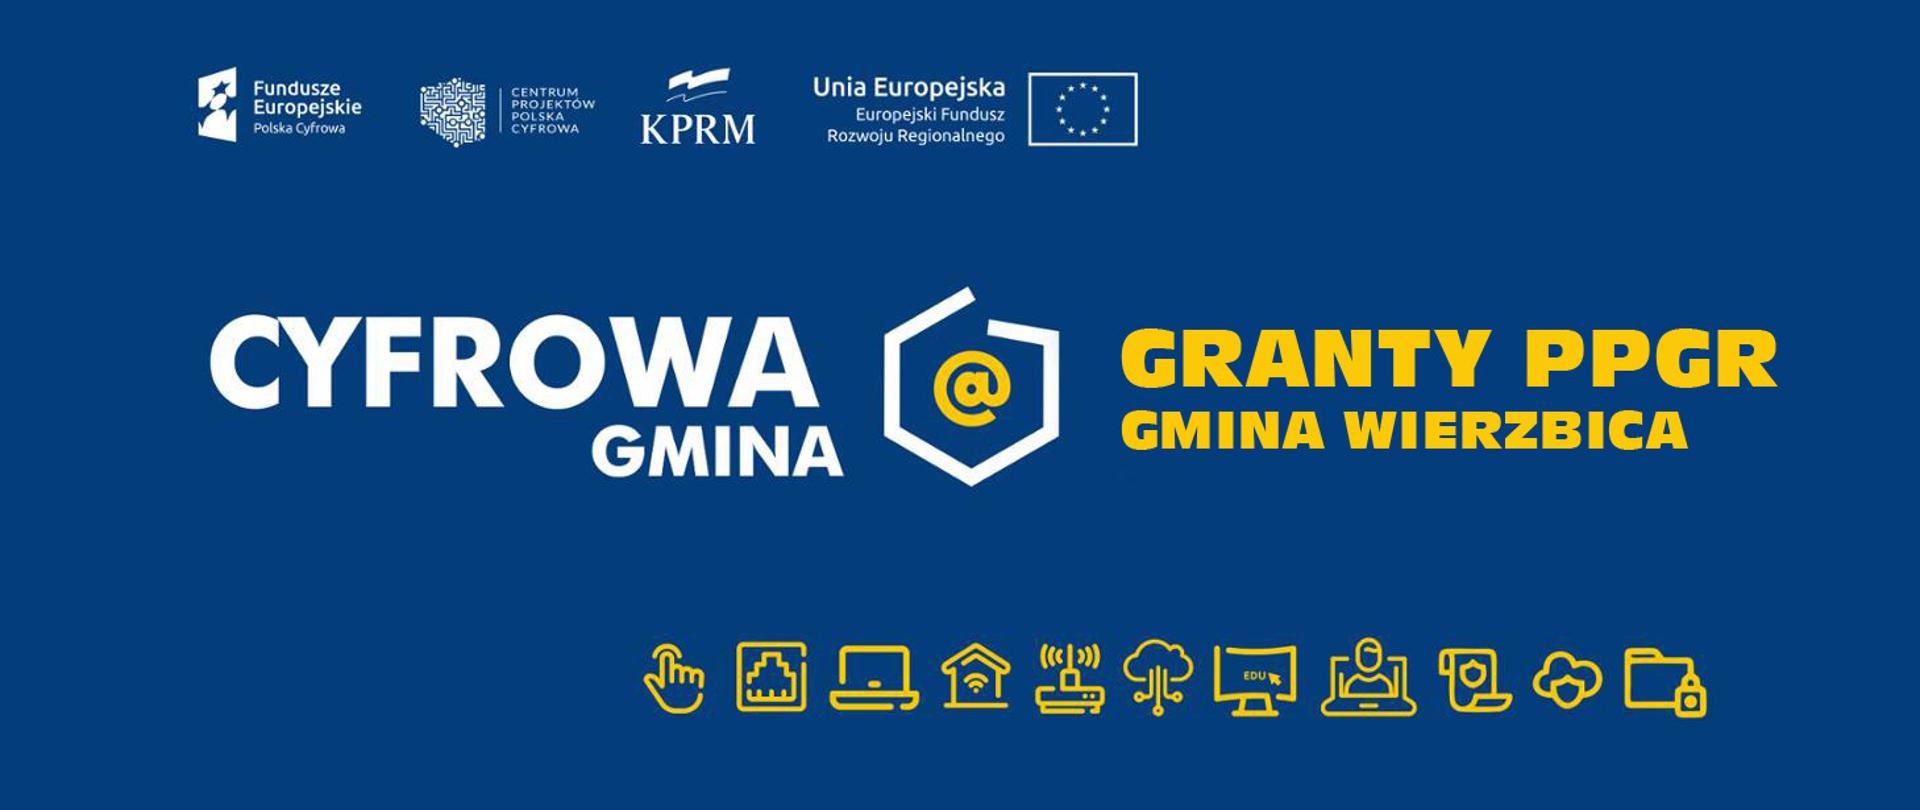 informacja dot. projektu Cyfrowa Gmina Granty PPGR dla Gminy Wierzbica, na niebieskim tle z białymi logotypami projektu oraz żółtymi ikonami informatycznymi